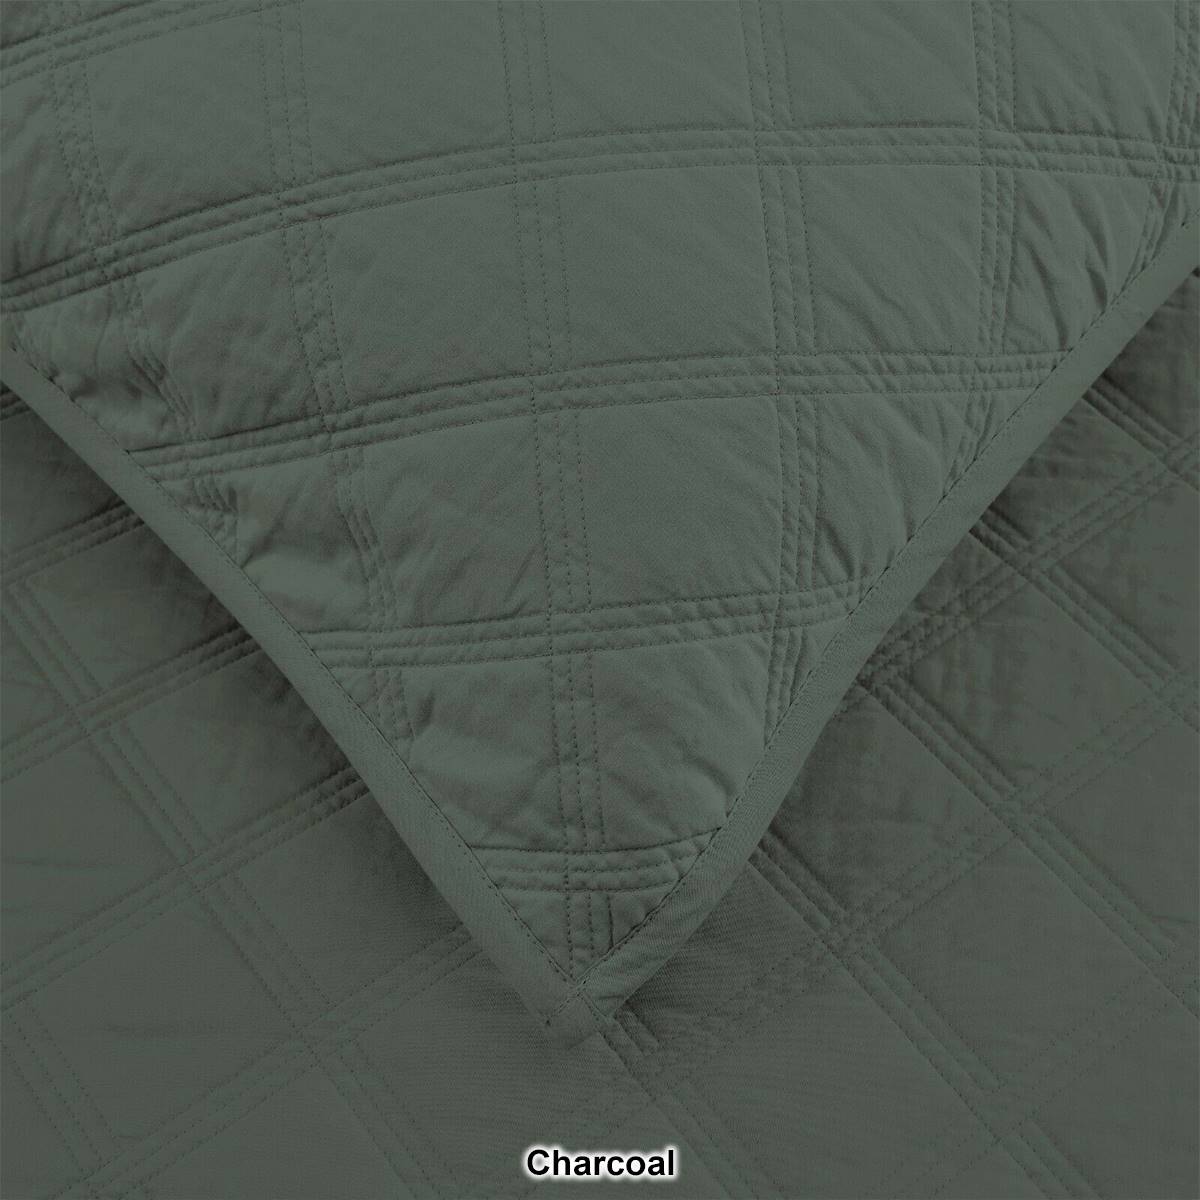 EnvioHome 100% Cotton Solid Quilt Bedding Set